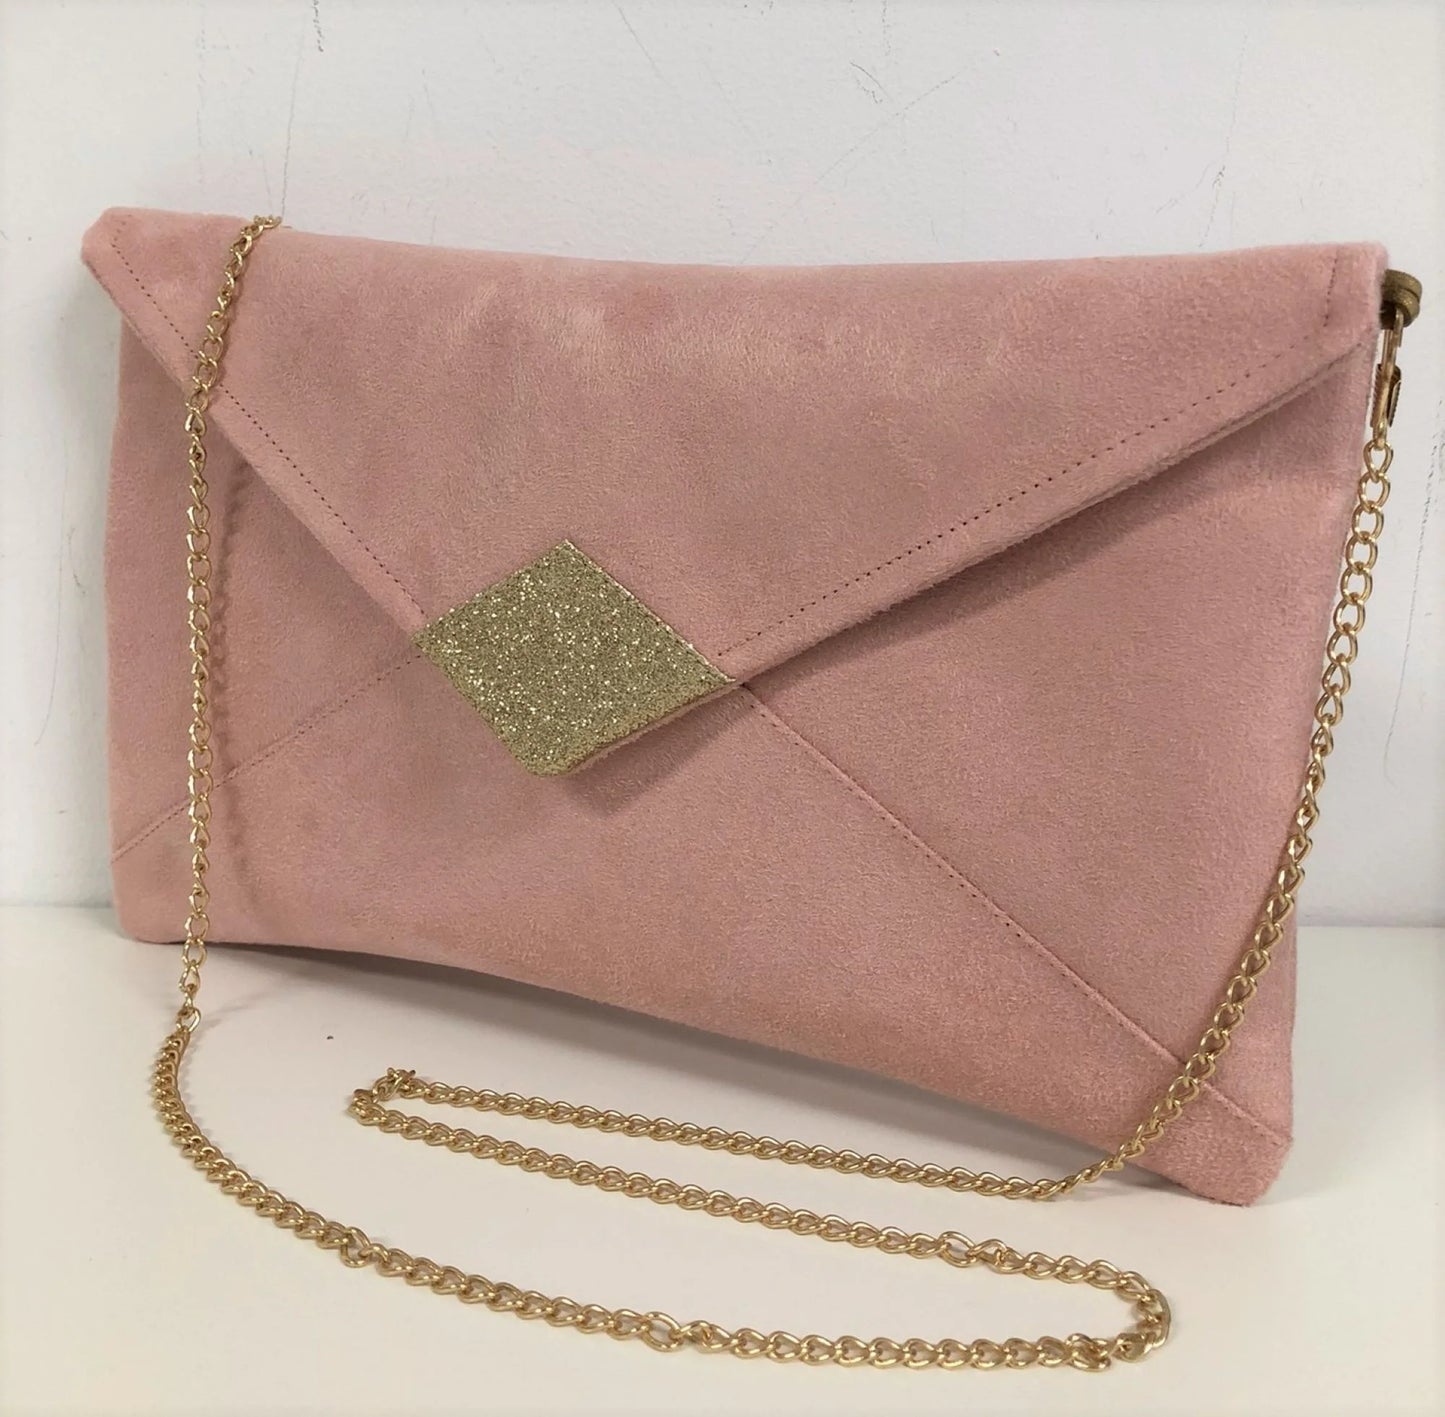 Le sac pochette Isa rose poudré à paillettes dorées, avec chainette amovible.